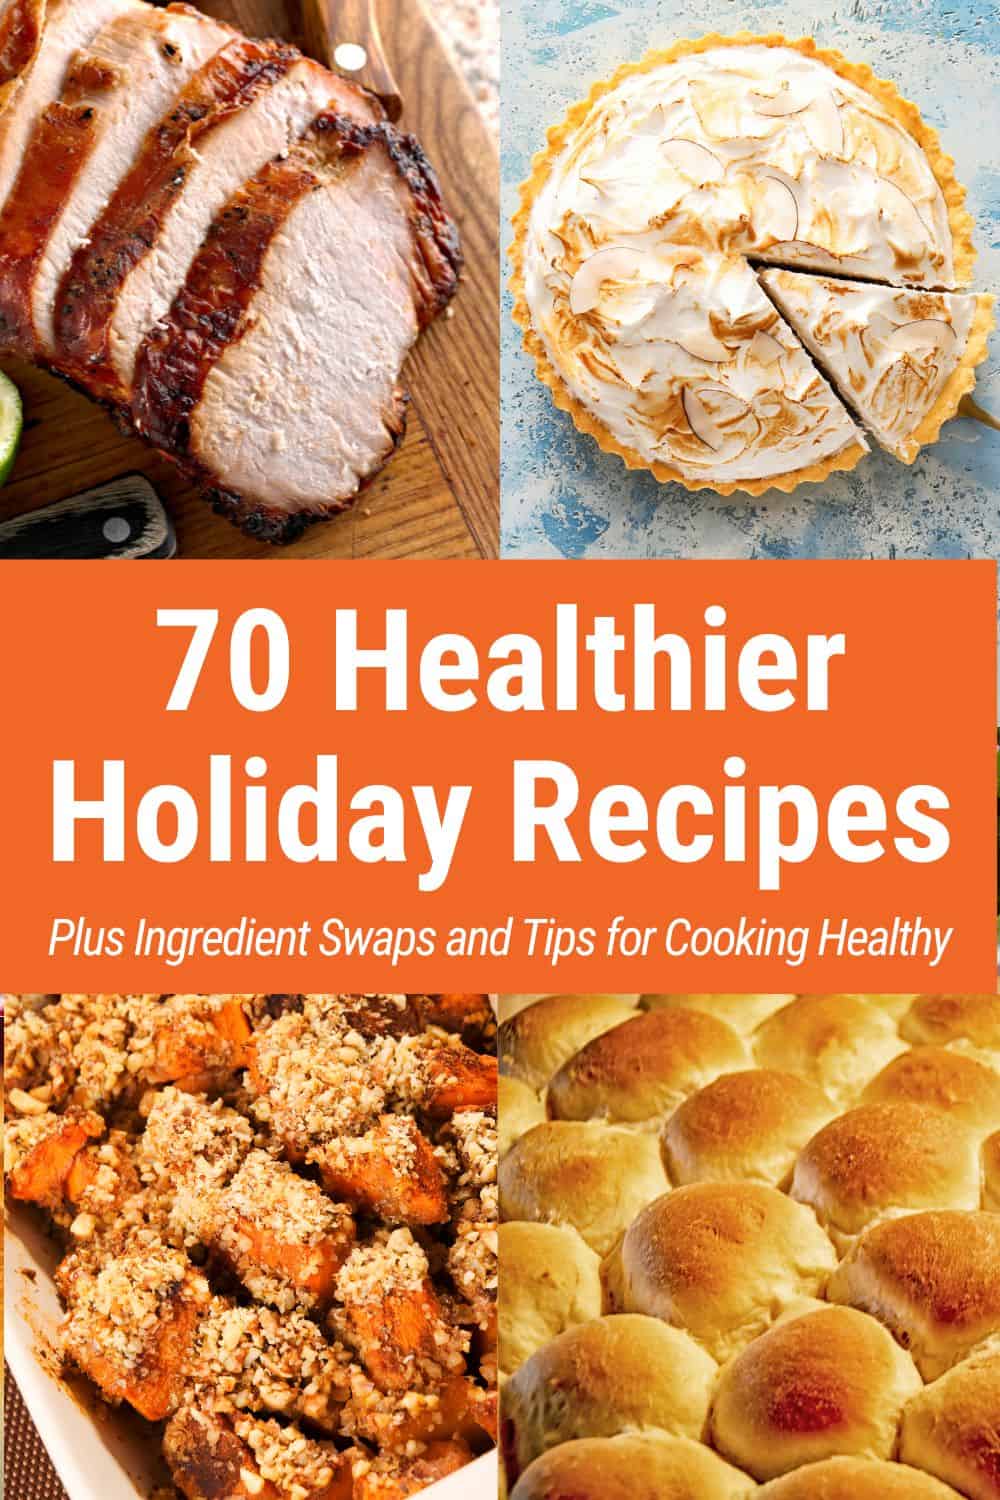 Healthier Holiday Recipes